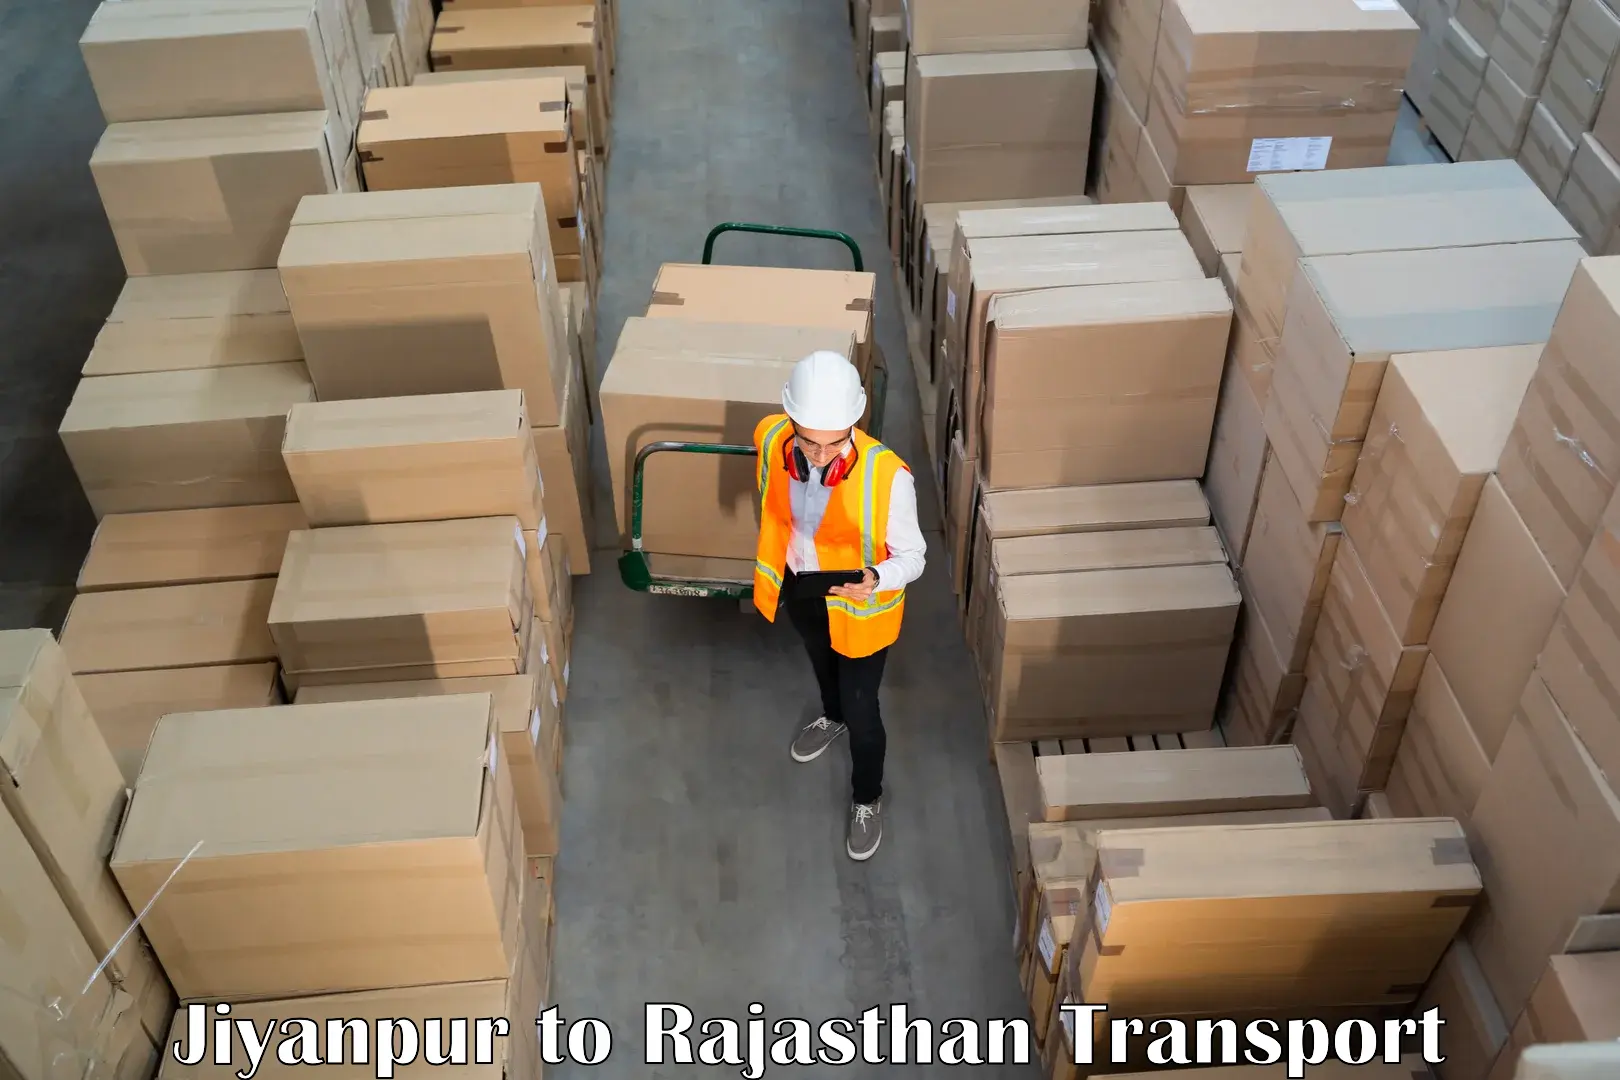 Furniture transport service Jiyanpur to Gudha Gorji